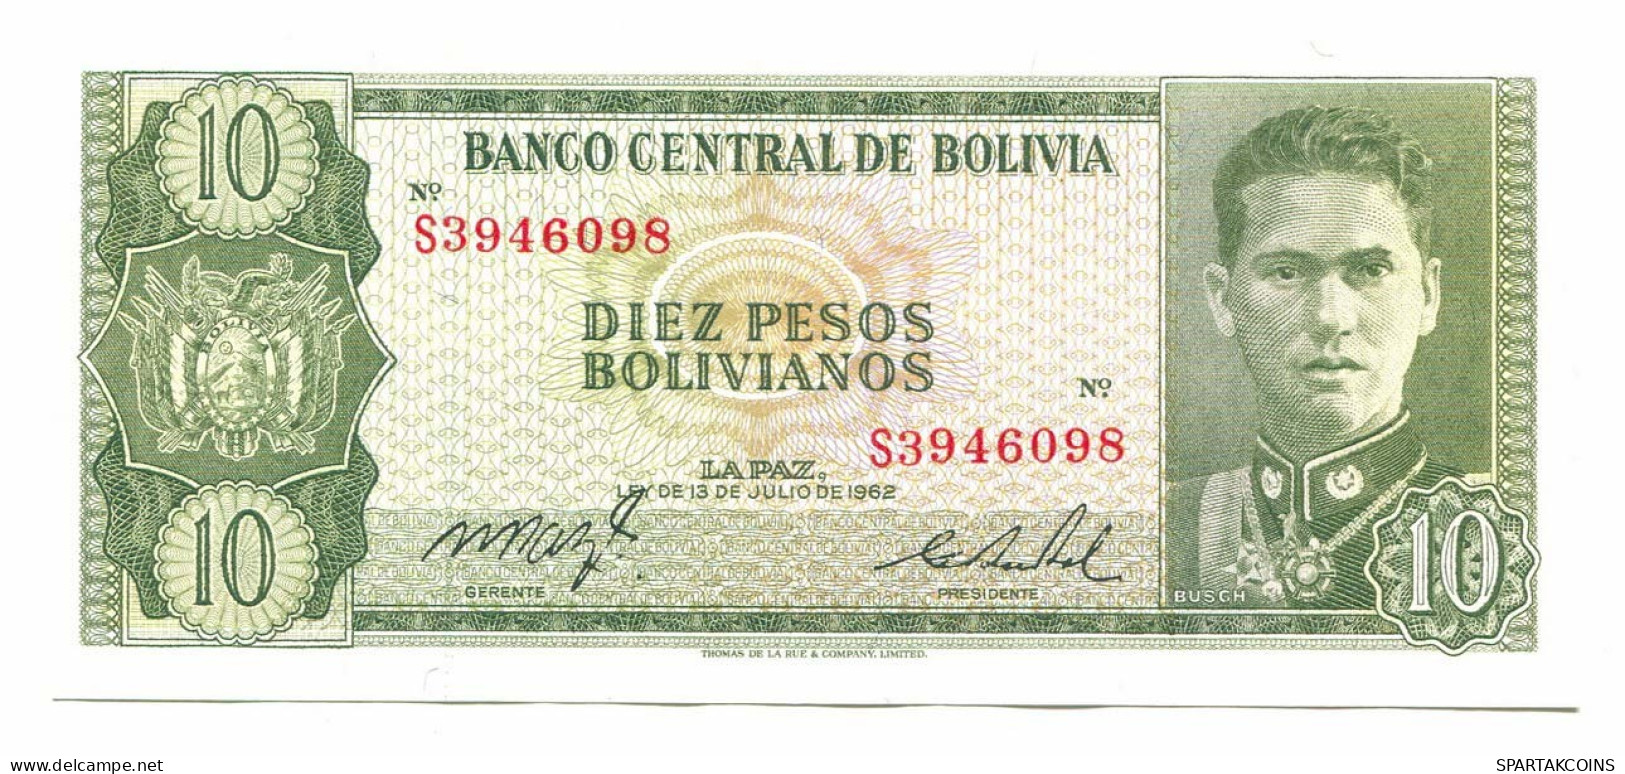 BOLIVIA 10 BOLIVIANOS 1962 SERIE S AUNC Paper Money Banknote #P10793.4 - Lokale Ausgaben